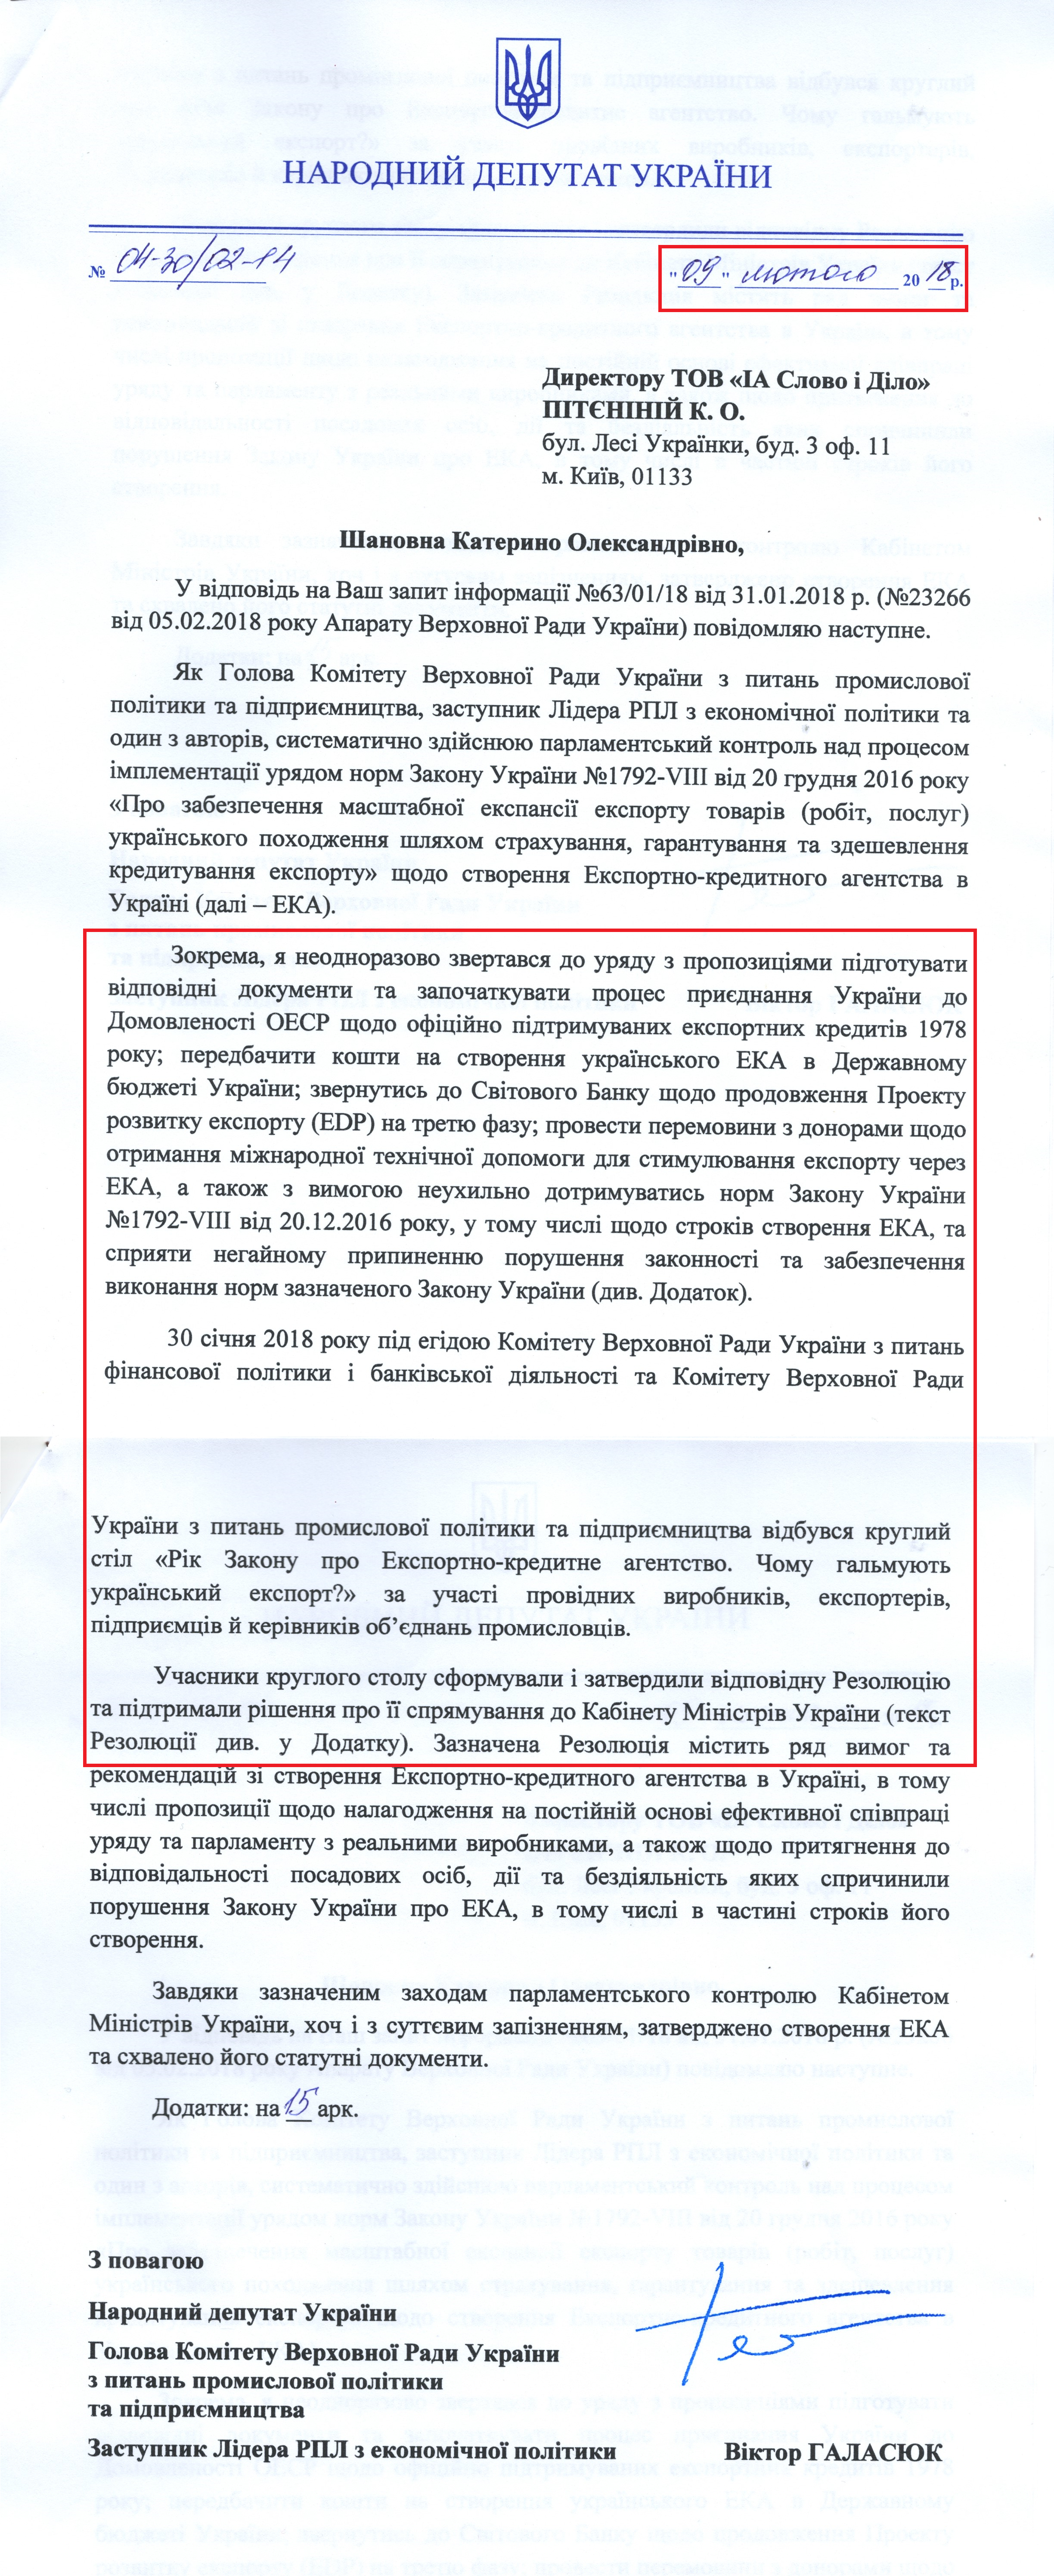 Лист від народного депутата Віктора Галасюка